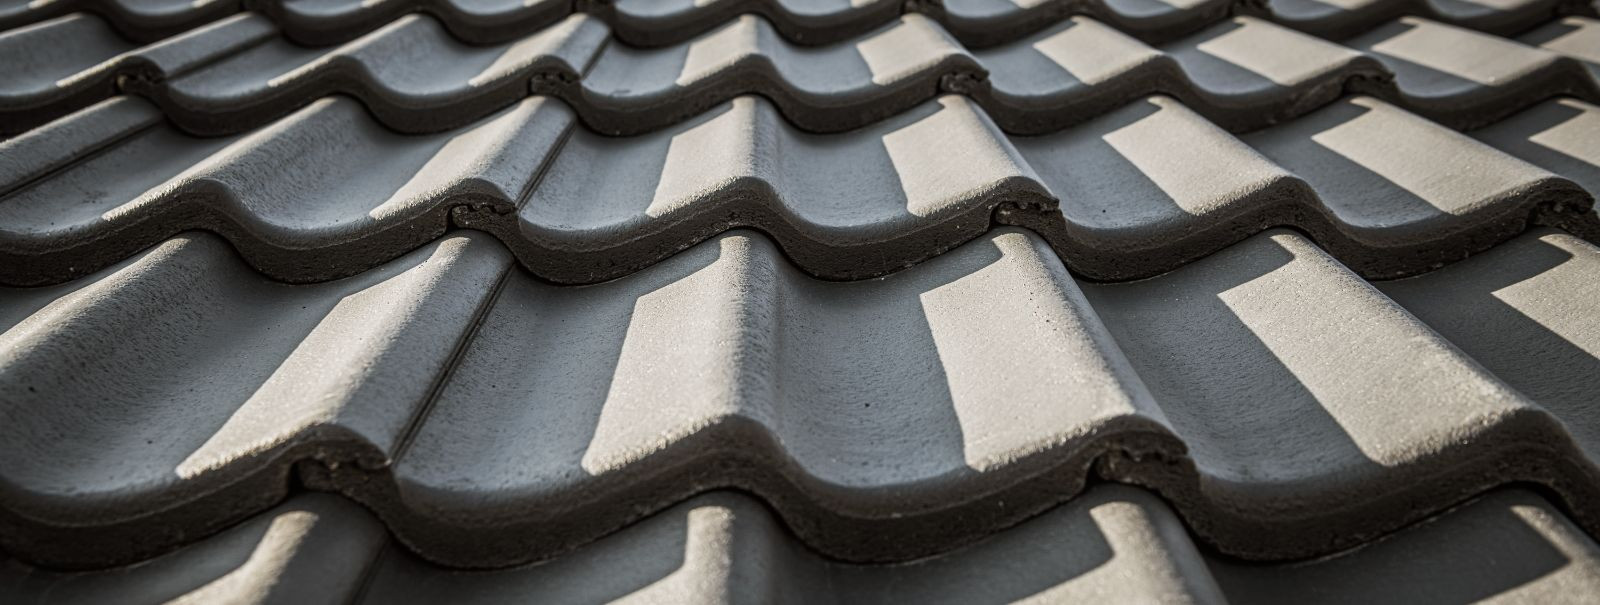 Kui olete koduomanik või kinnisvaraarendaja, on teie katuse seisukorra mõistmine oluline teie vara ohutuse, mugavuse ja väärtuse säilitamiseks. Katkine katus võ